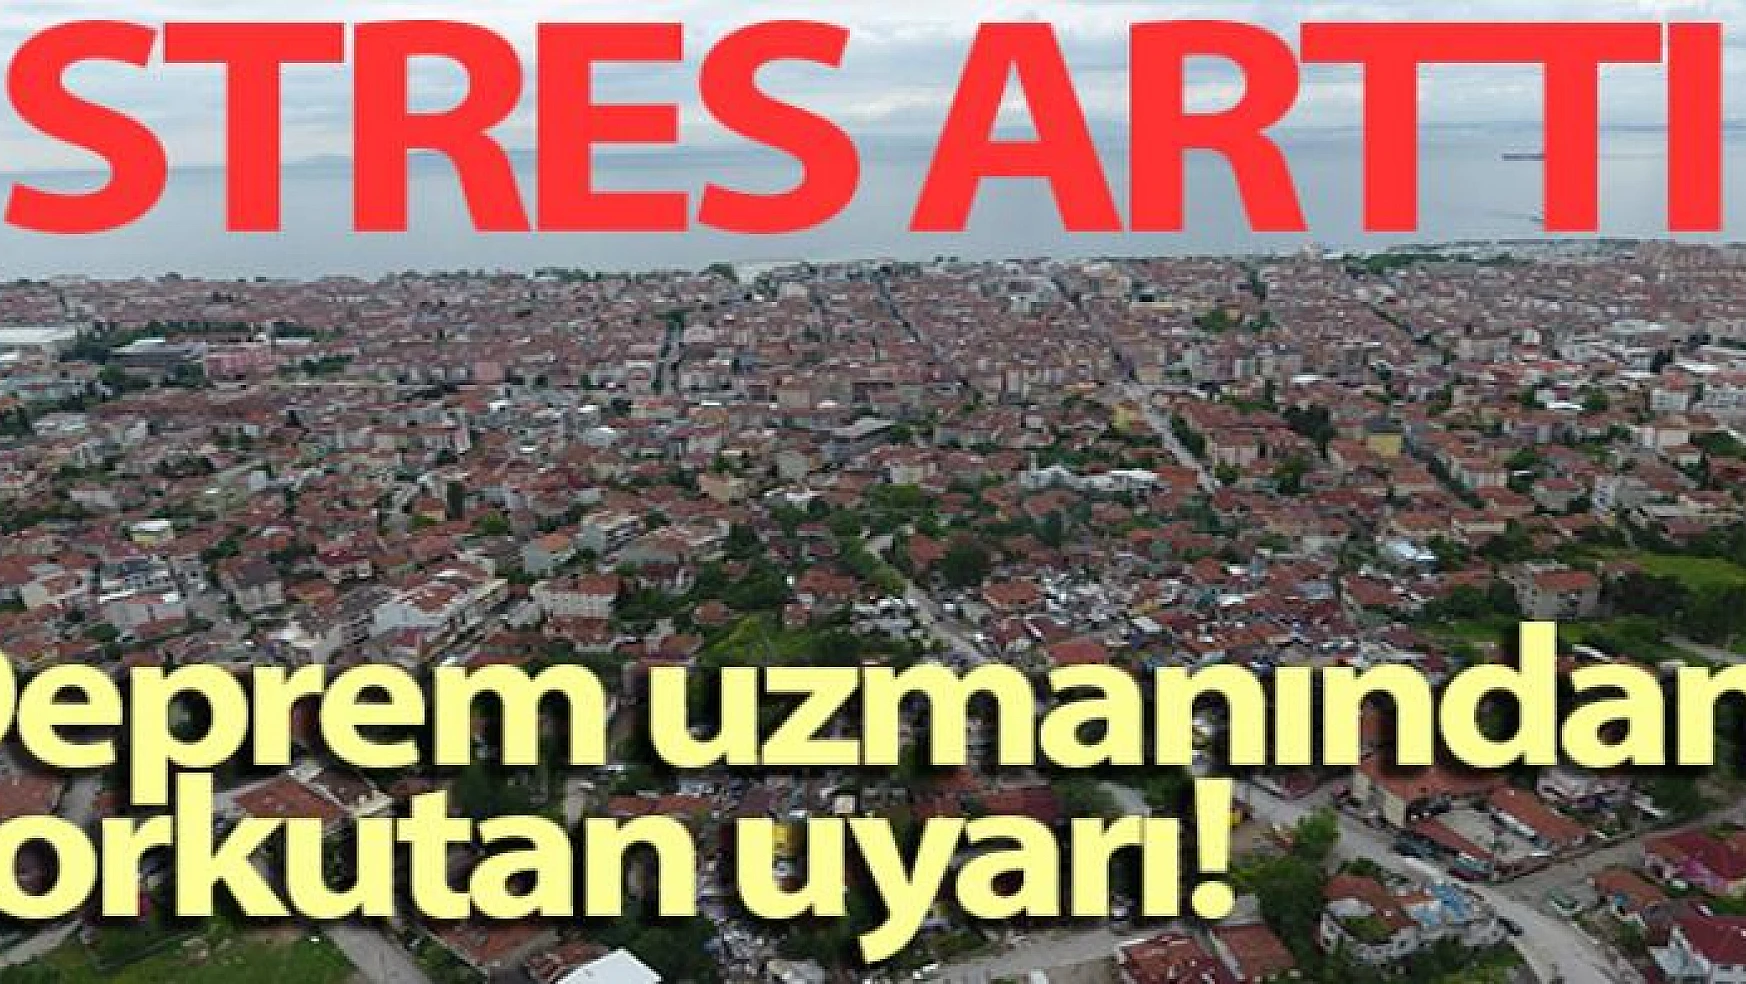 Deprem uzmanından korkutan uyarı: 'Marmara'da stres arttı'